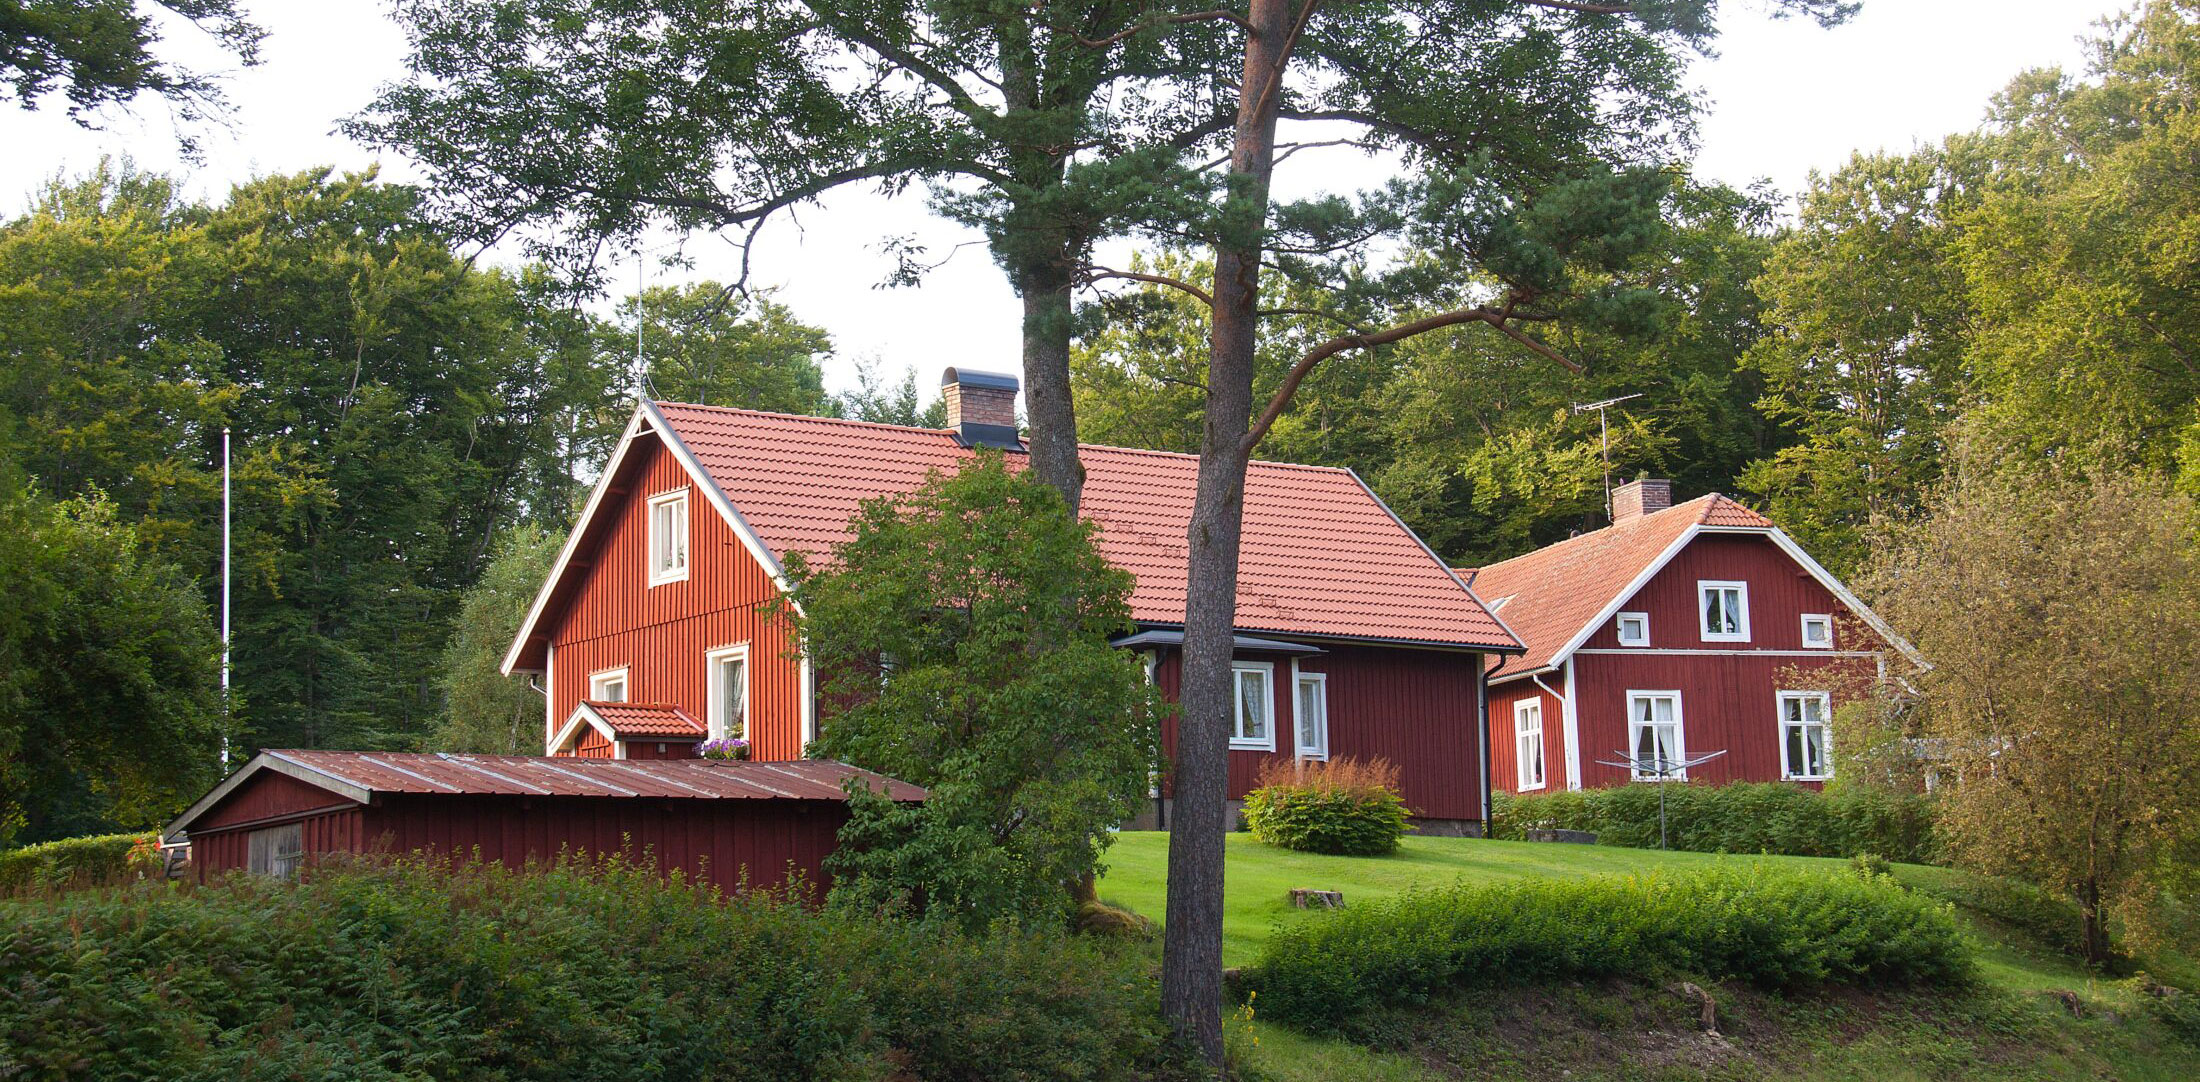 Maison Suédoise